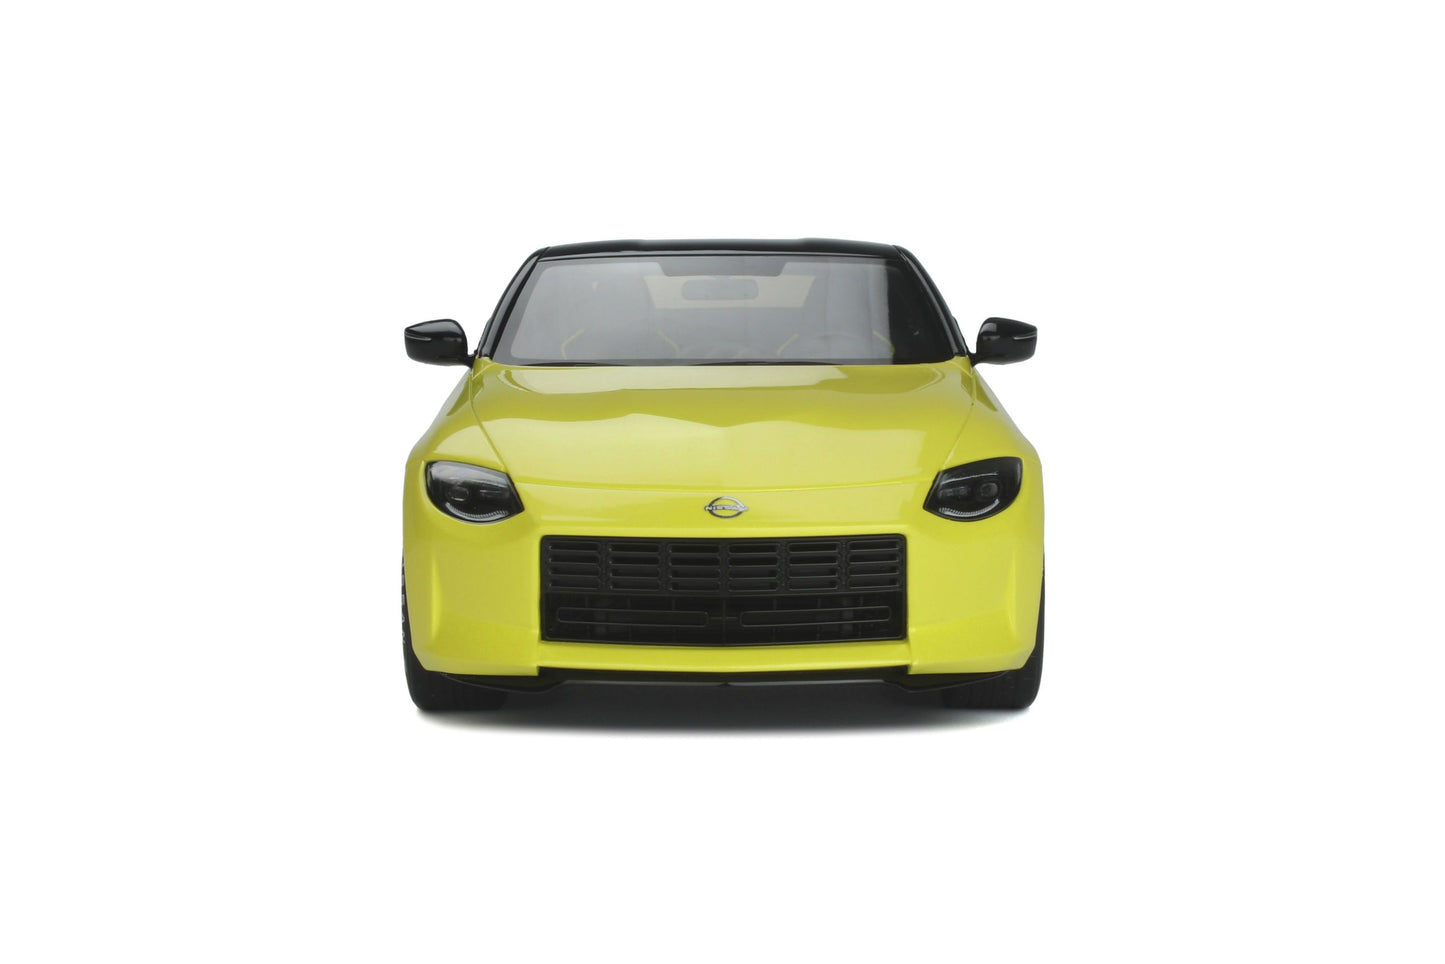 GT Spirit - Nissan Z Proto (Yellow) 1:18 Scale Model Car